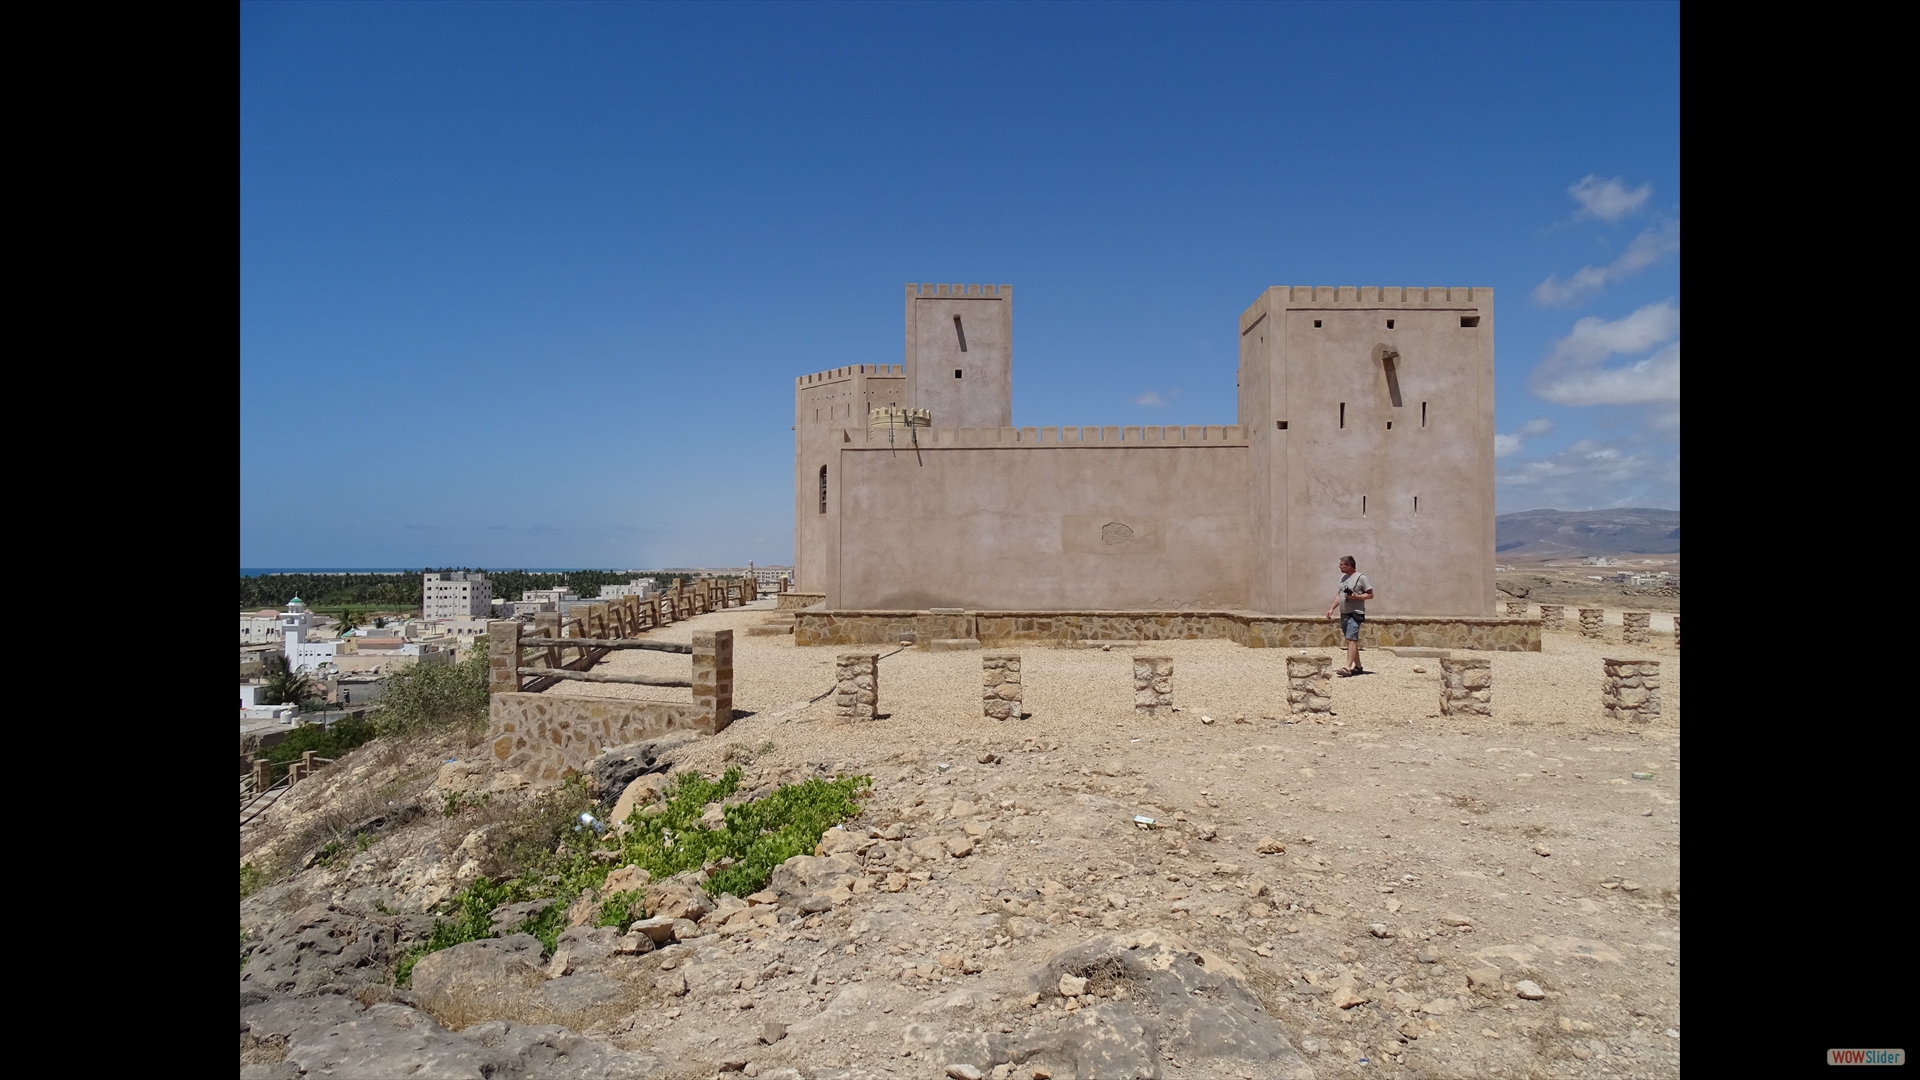 Al-Baleed Archaeological Park